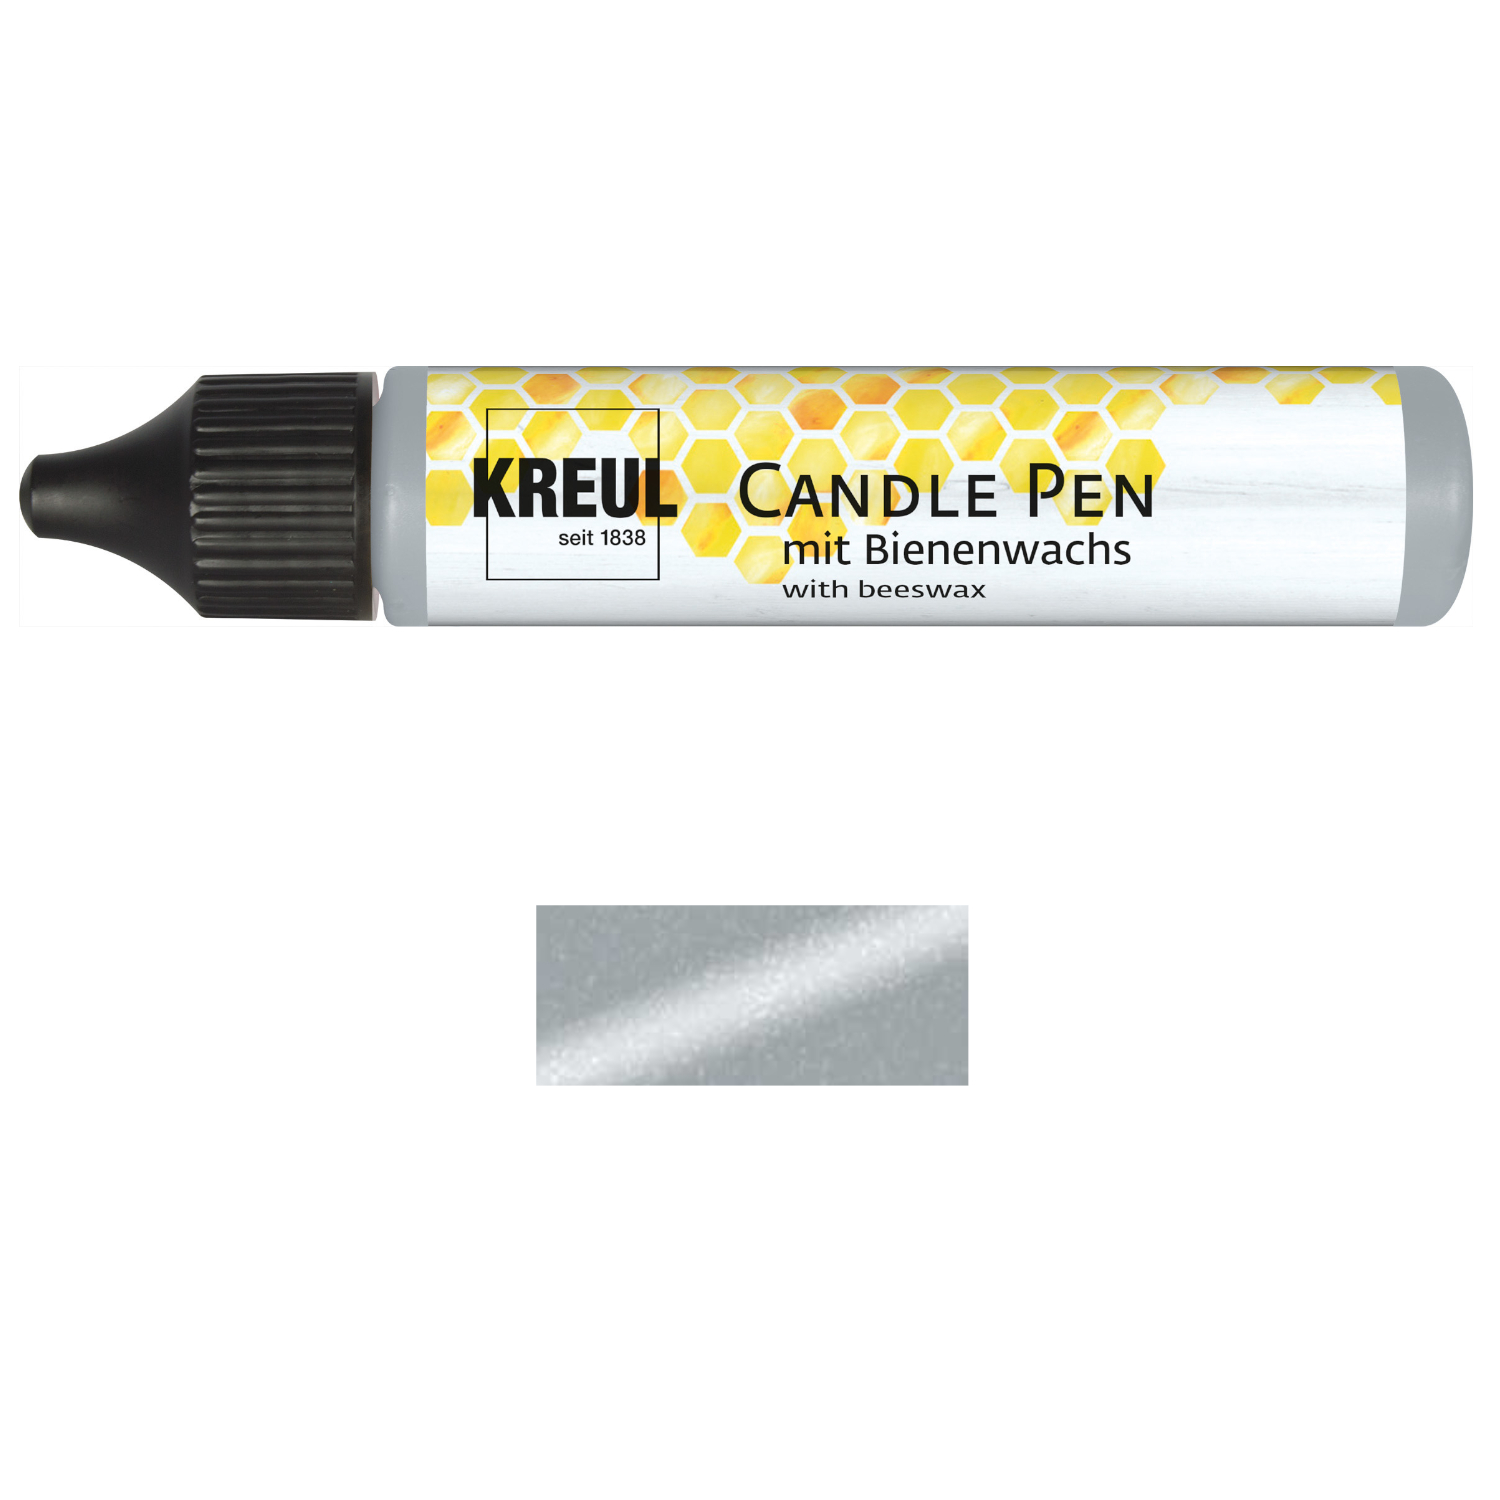 NEU KREUL Candle Pen / Kerzen-Stift, 29ml, Silber